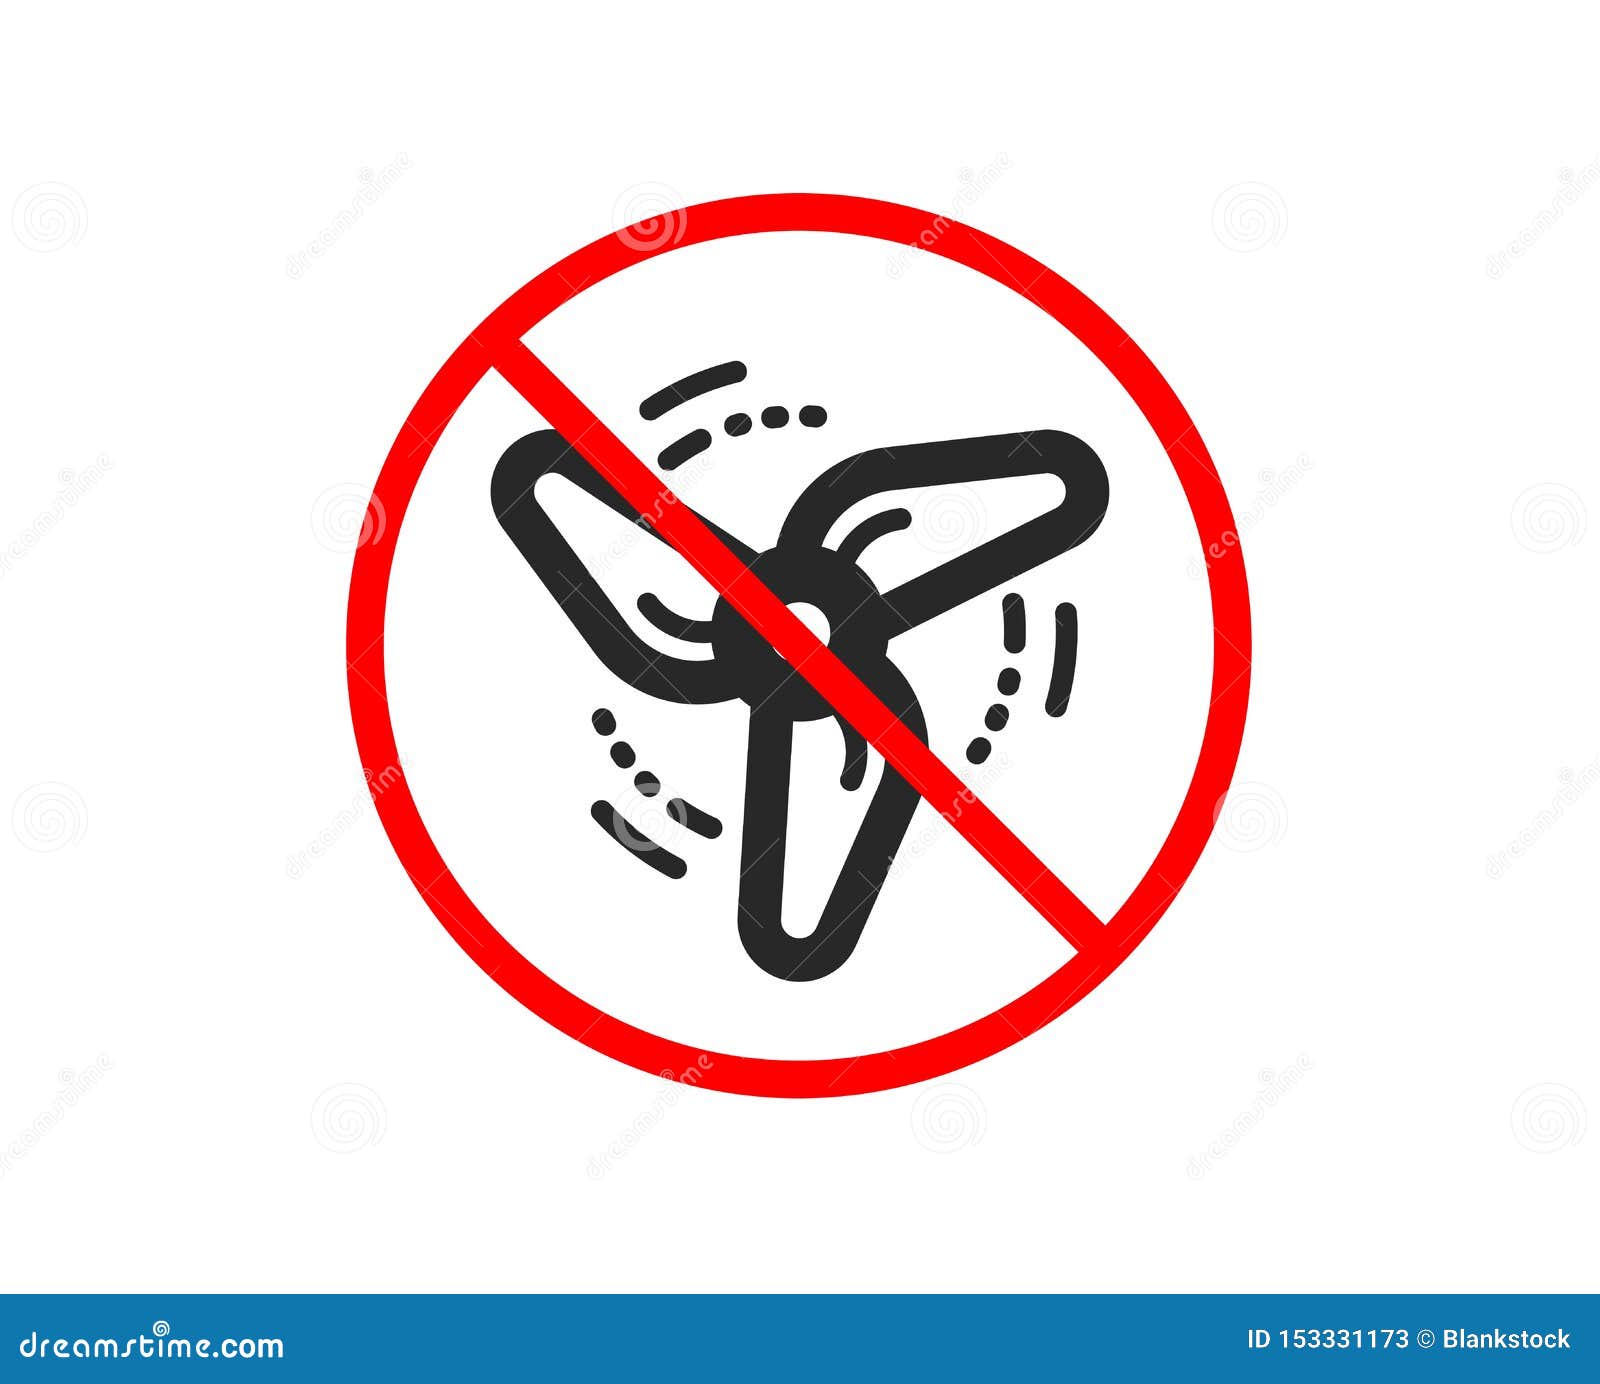 Включи стоп бана. Запрет вентиляторов. Надпись, что детям пользоваться кулером запрещено. Муха запрет. Запрещающий знак мухи.